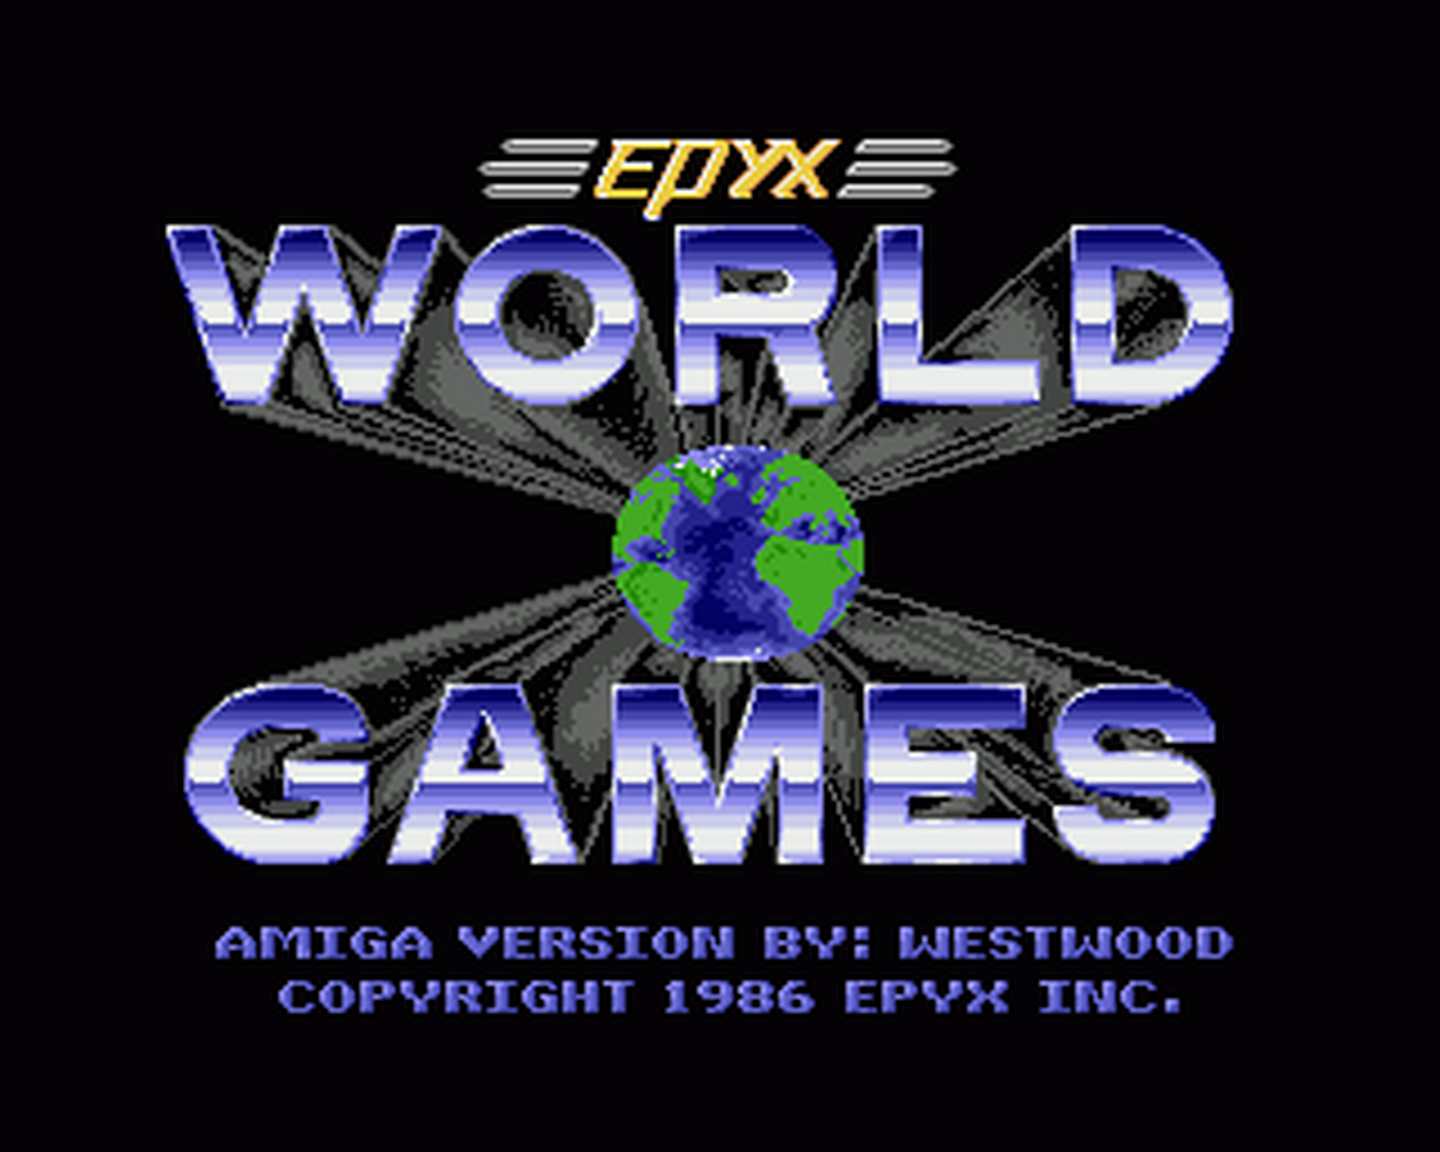 Amiga GameBase World_Games Epyx 1987